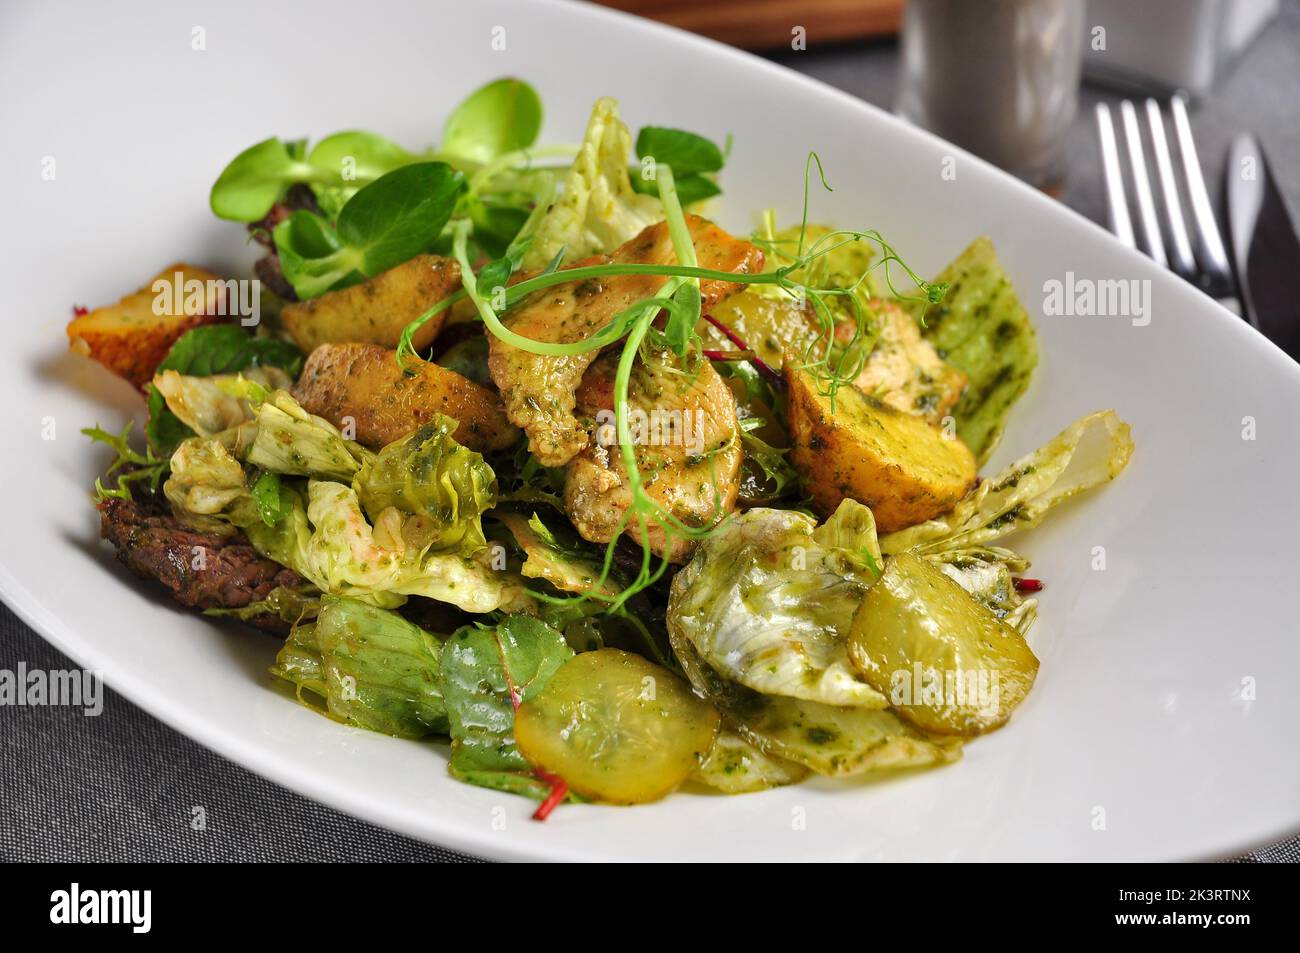 sabrosa ensalada caliente con ternera, pollo, cerdo y verduras Foto de stock